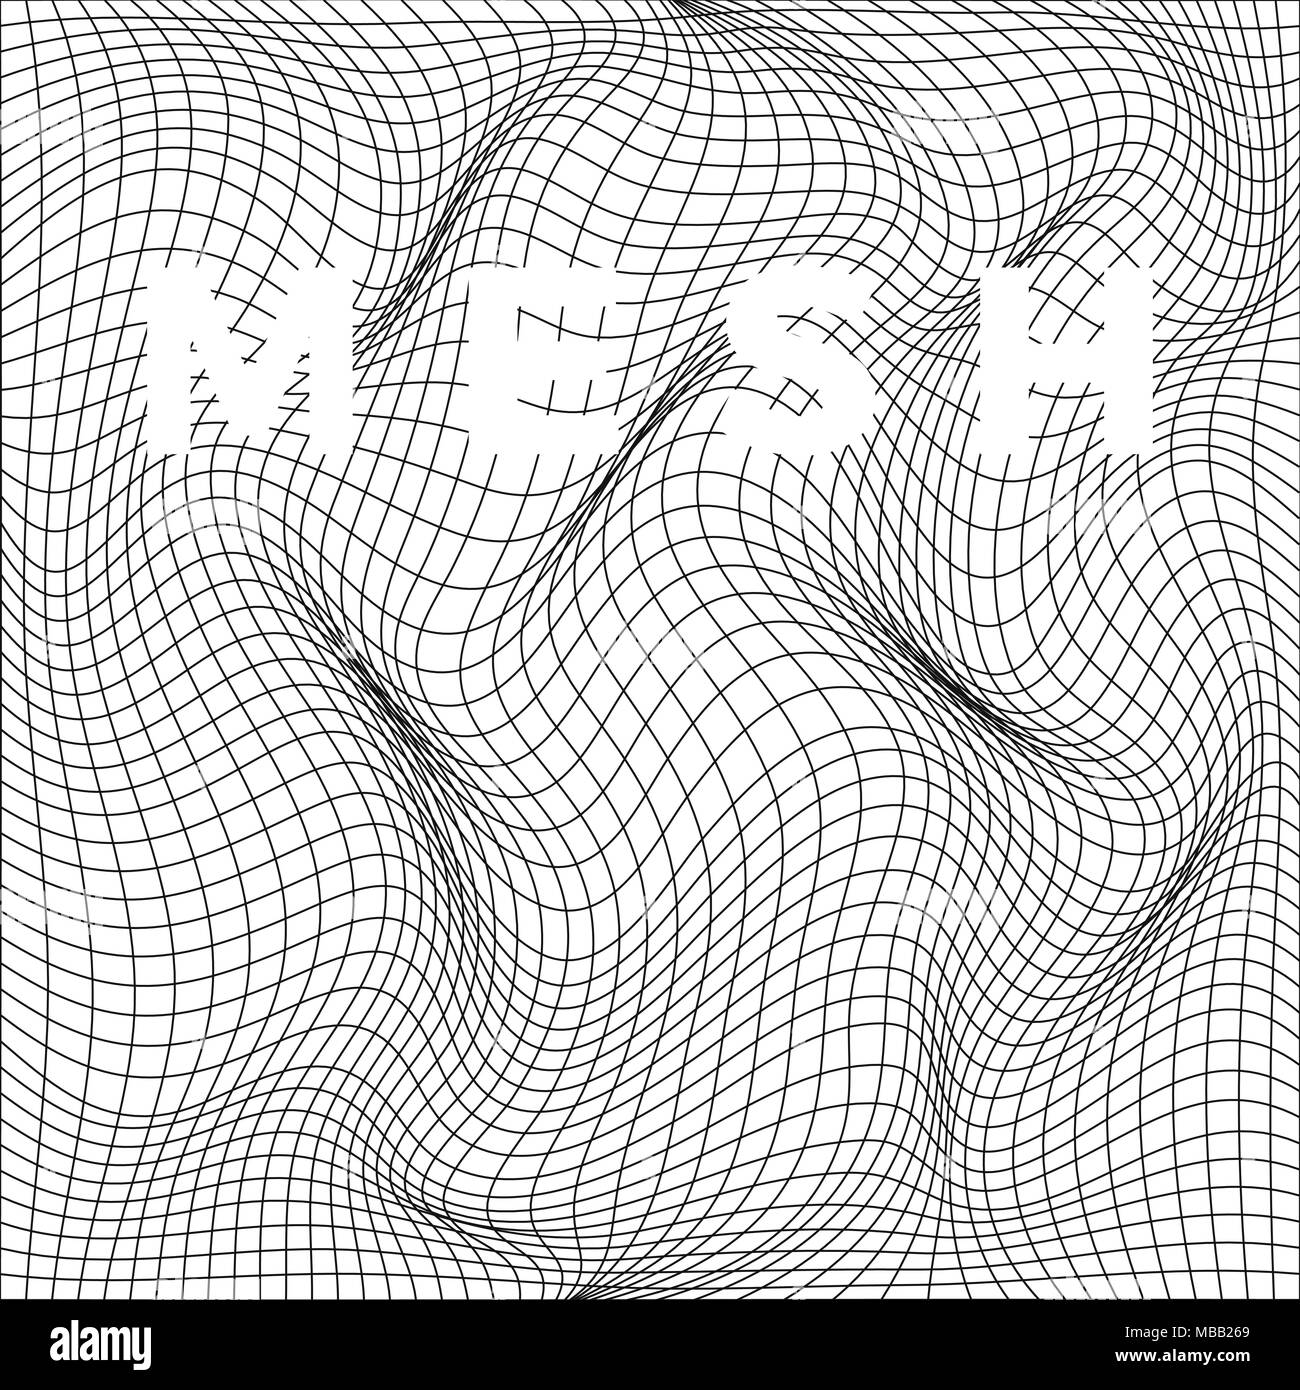 Abstract deformazione della net. Ondulata struttura a maglia. Illustrazione di vettore isolato su sfondo bianco Illustrazione Vettoriale